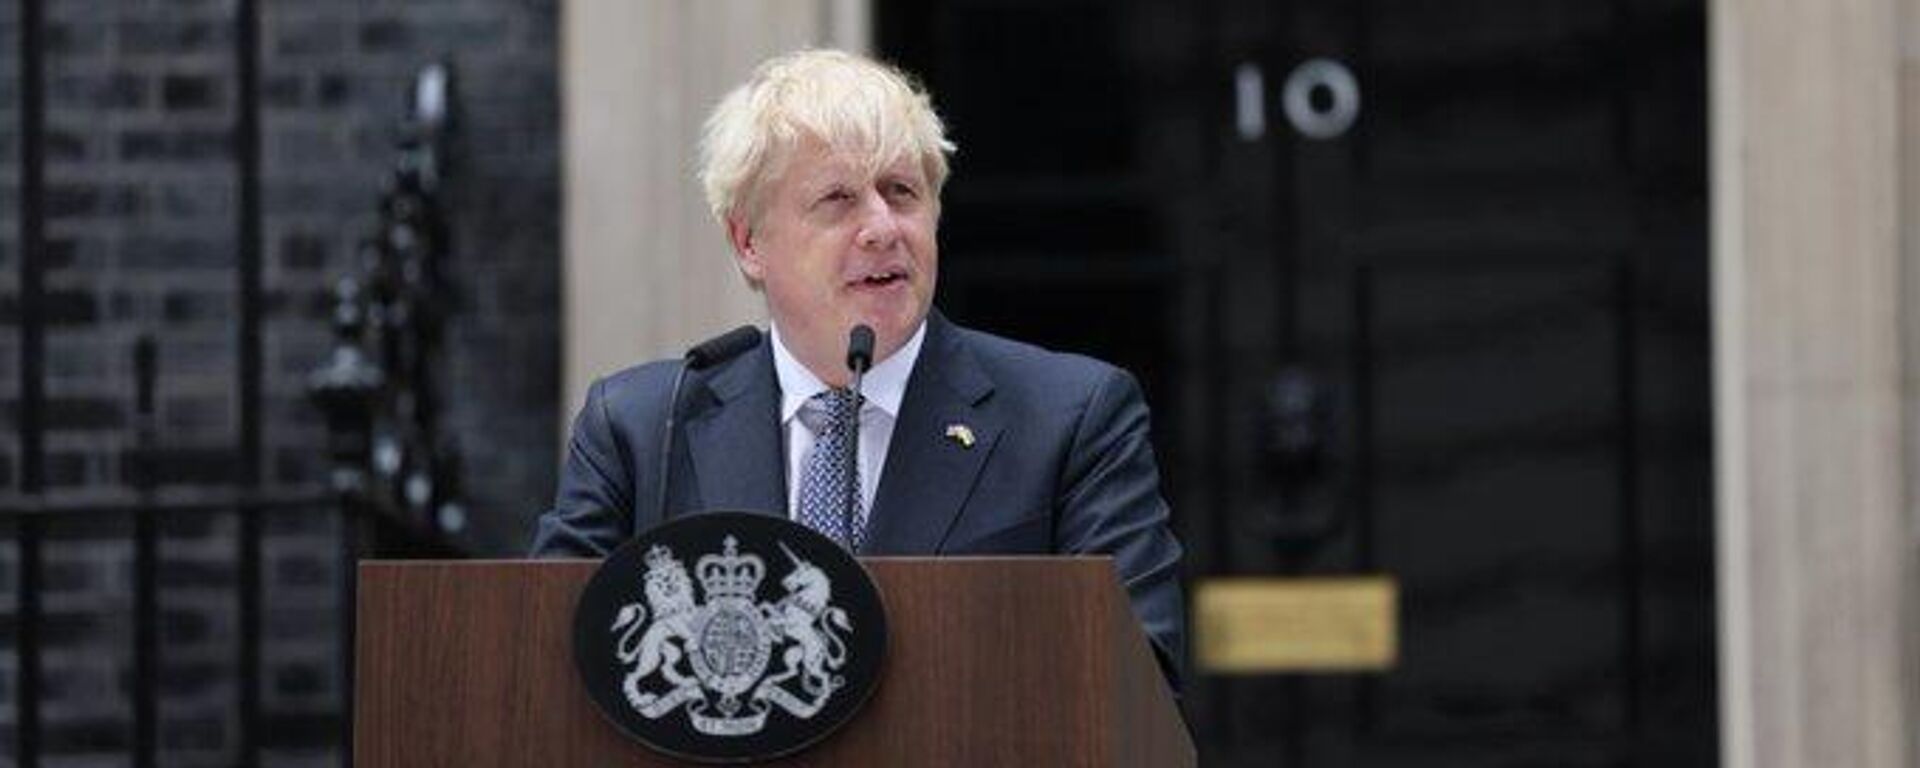 Renuncia de Boris Johnson como primer ministro del Reino Unido. - Sputnik Mundo, 1920, 20.07.2022